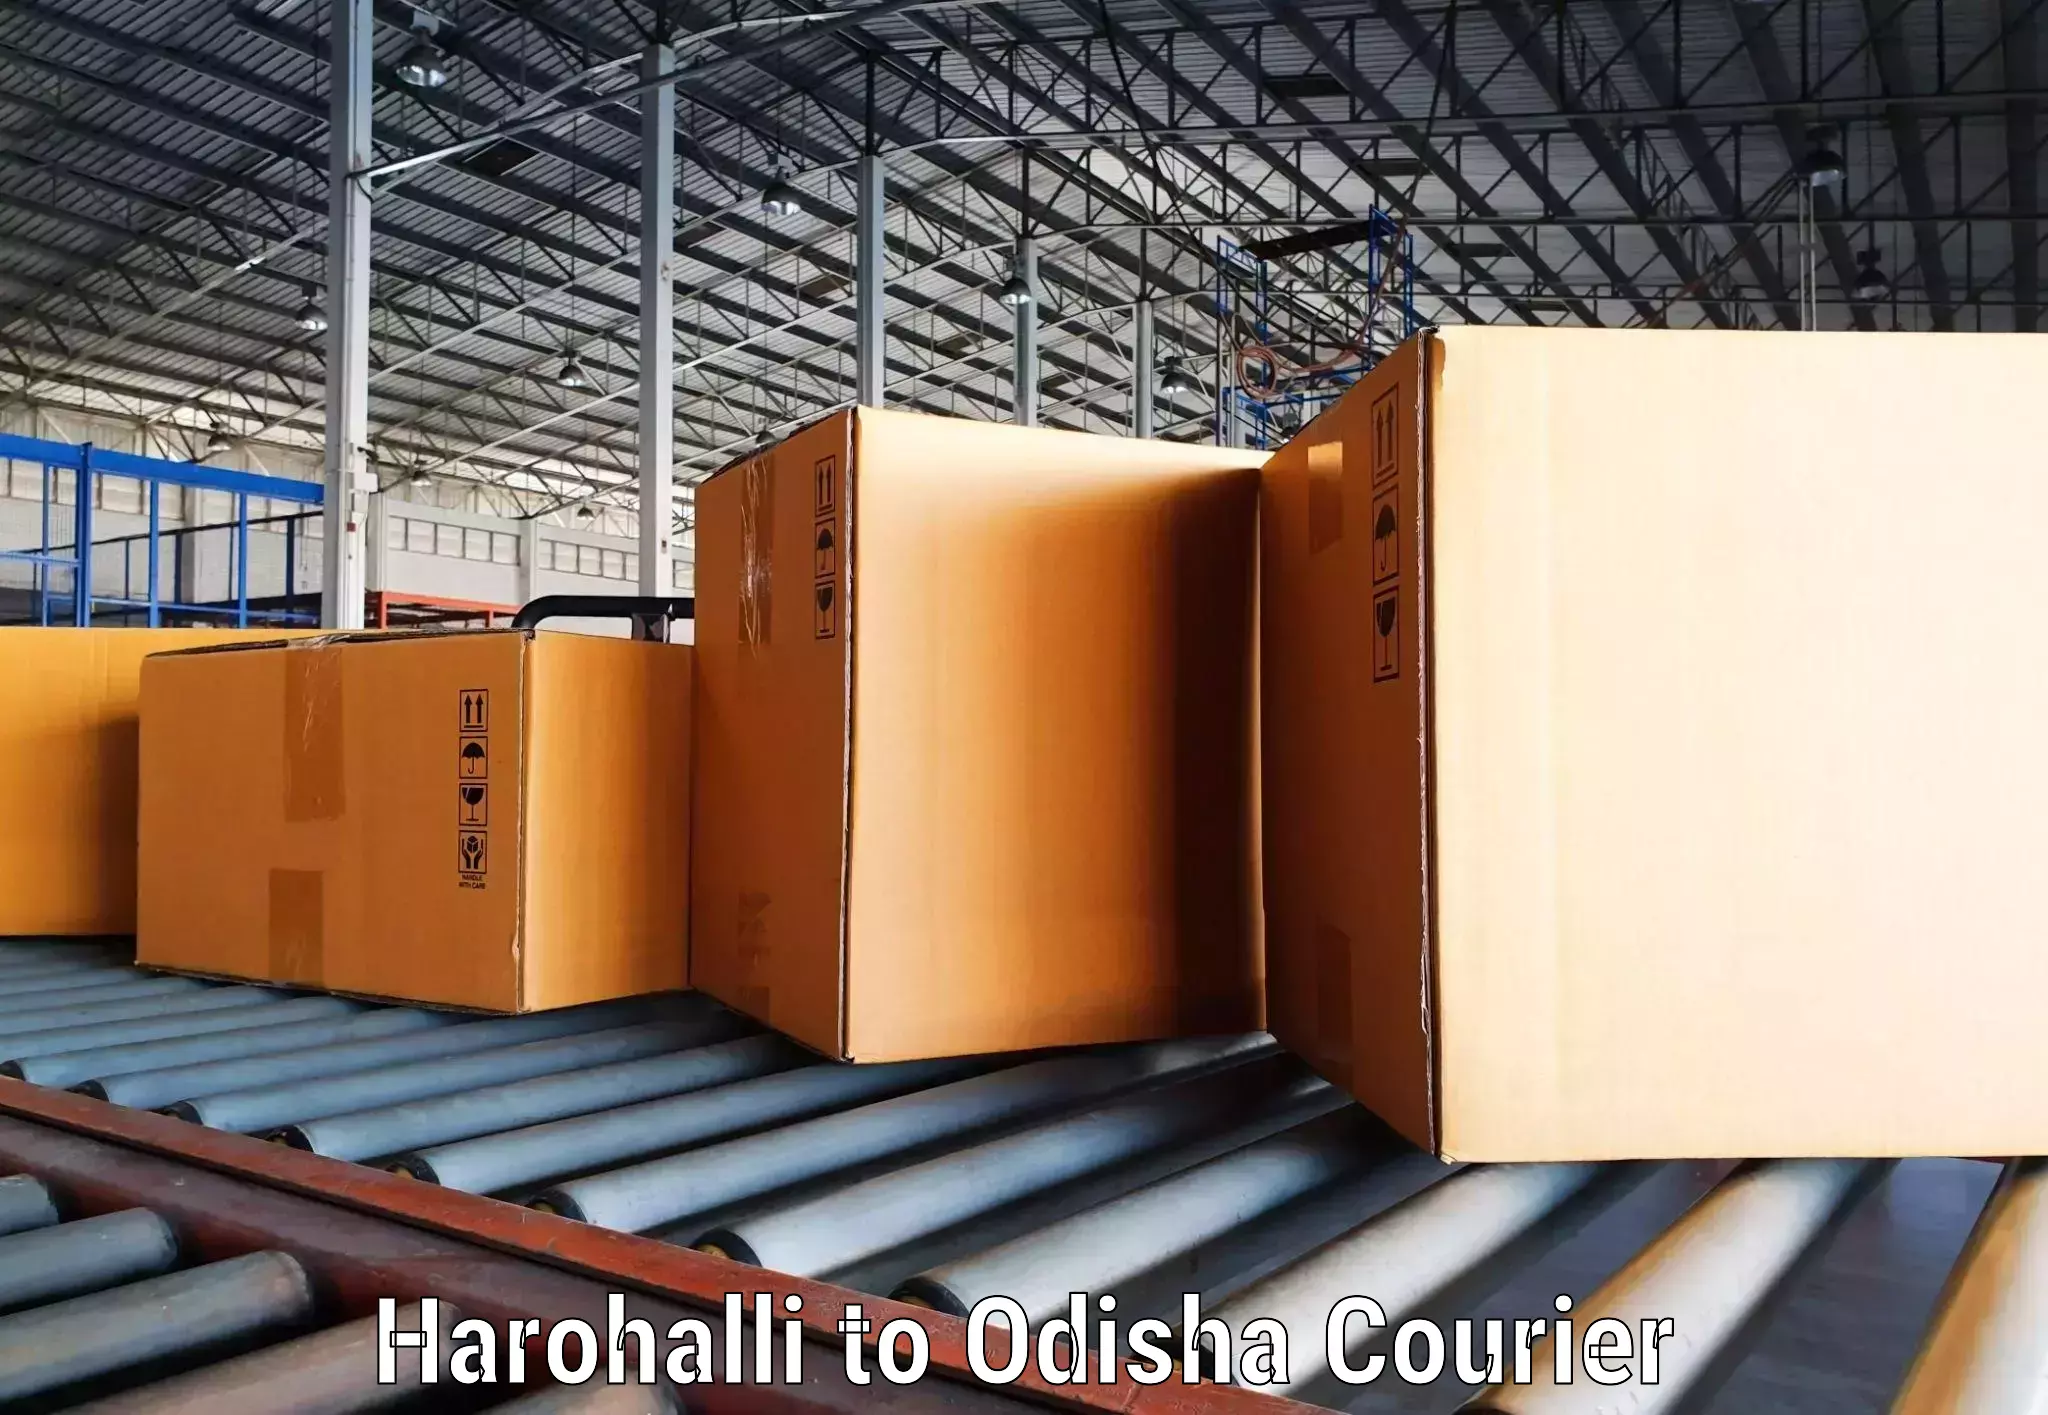 Affordable parcel rates Harohalli to Ukhunda